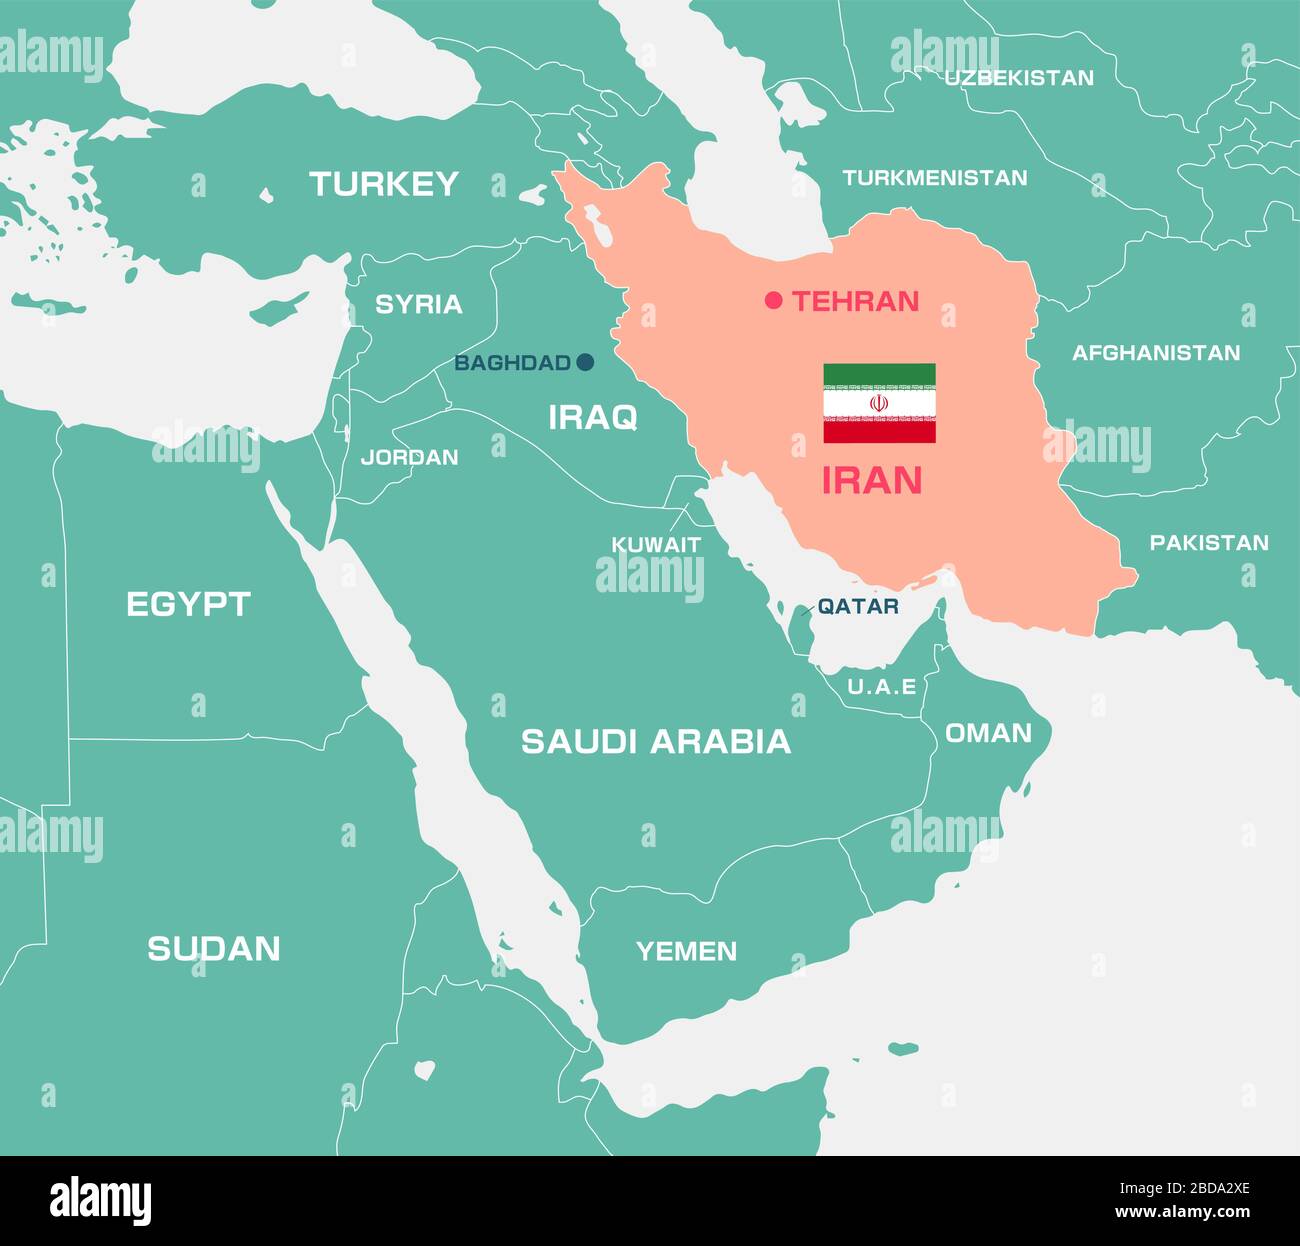 Iran et Moyen-Orient , carte des pays arabes / Anglais Illustration de Vecteur